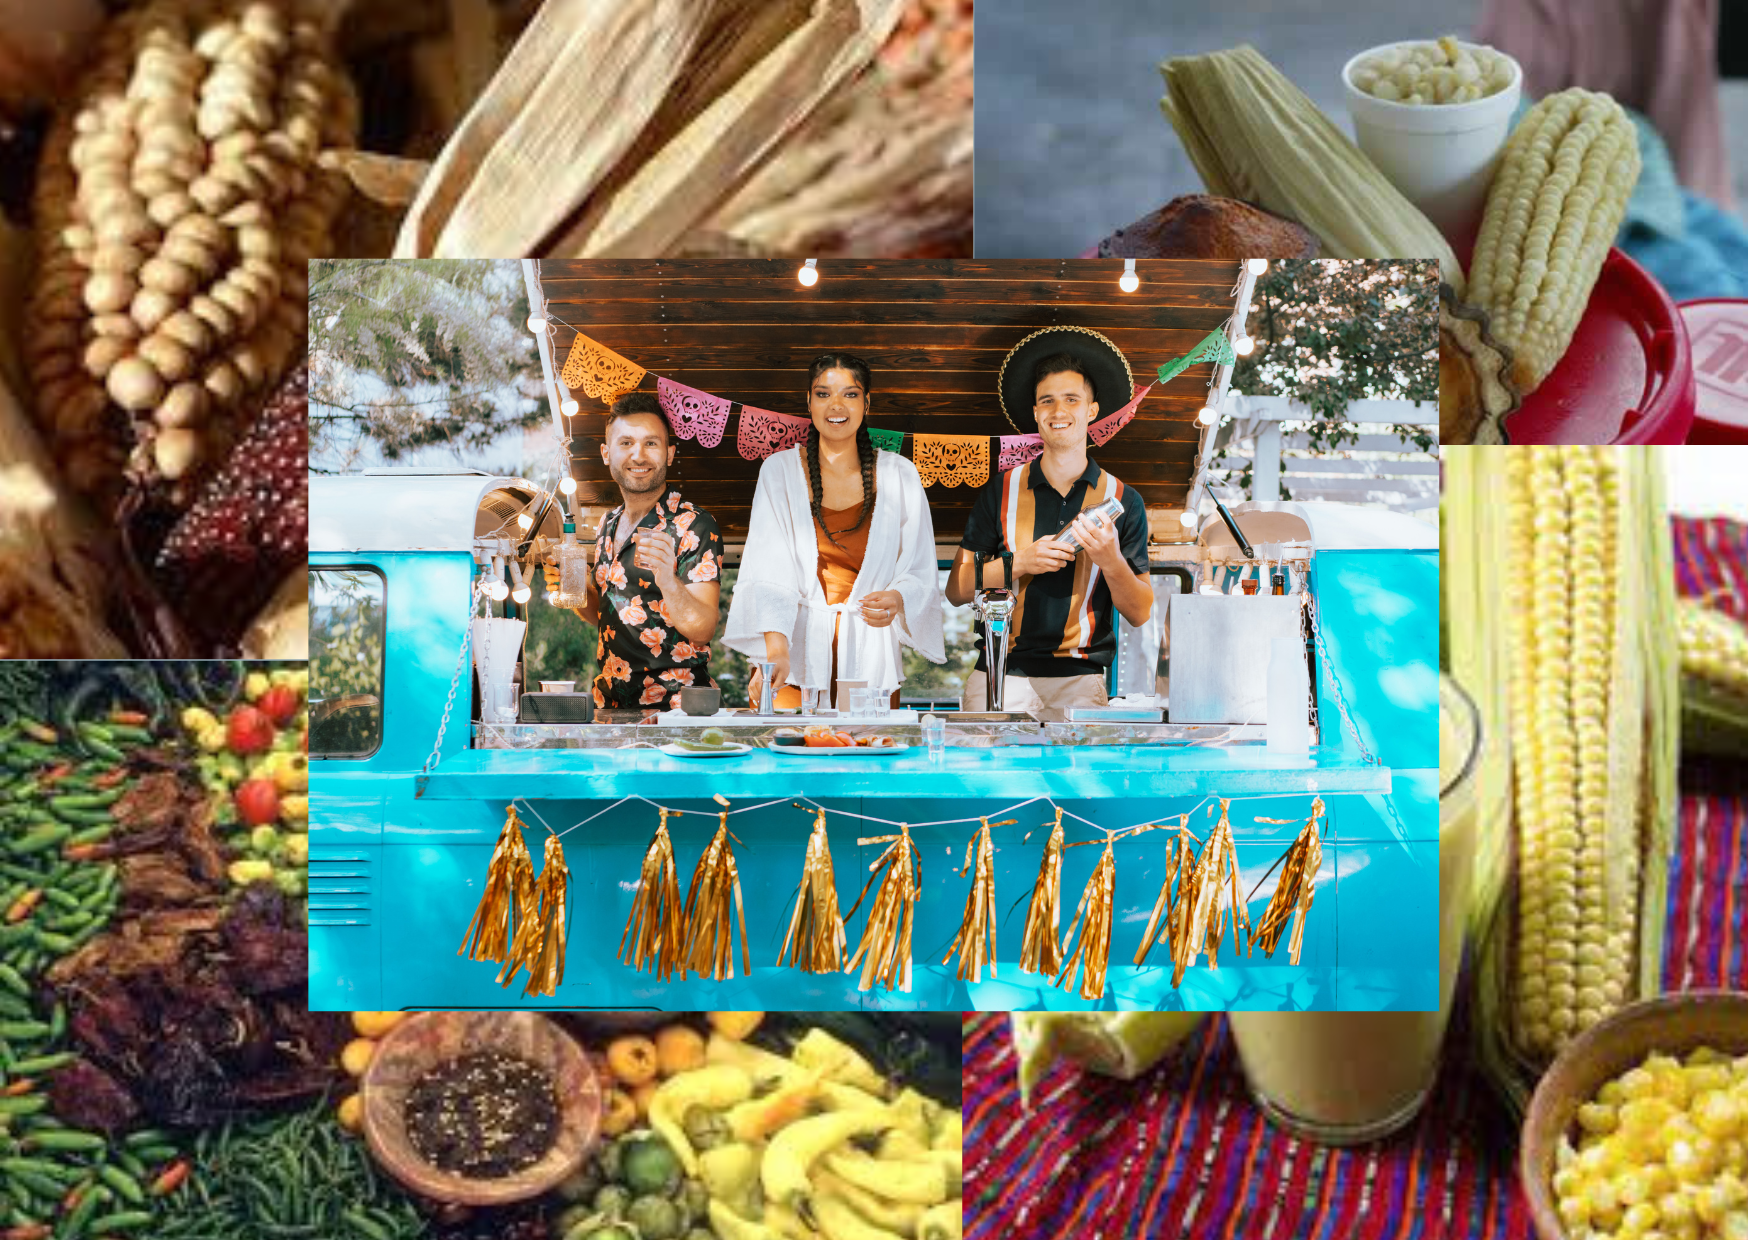 La importancia del maíz en la economía, la cultura y las tradiciones mexicanas